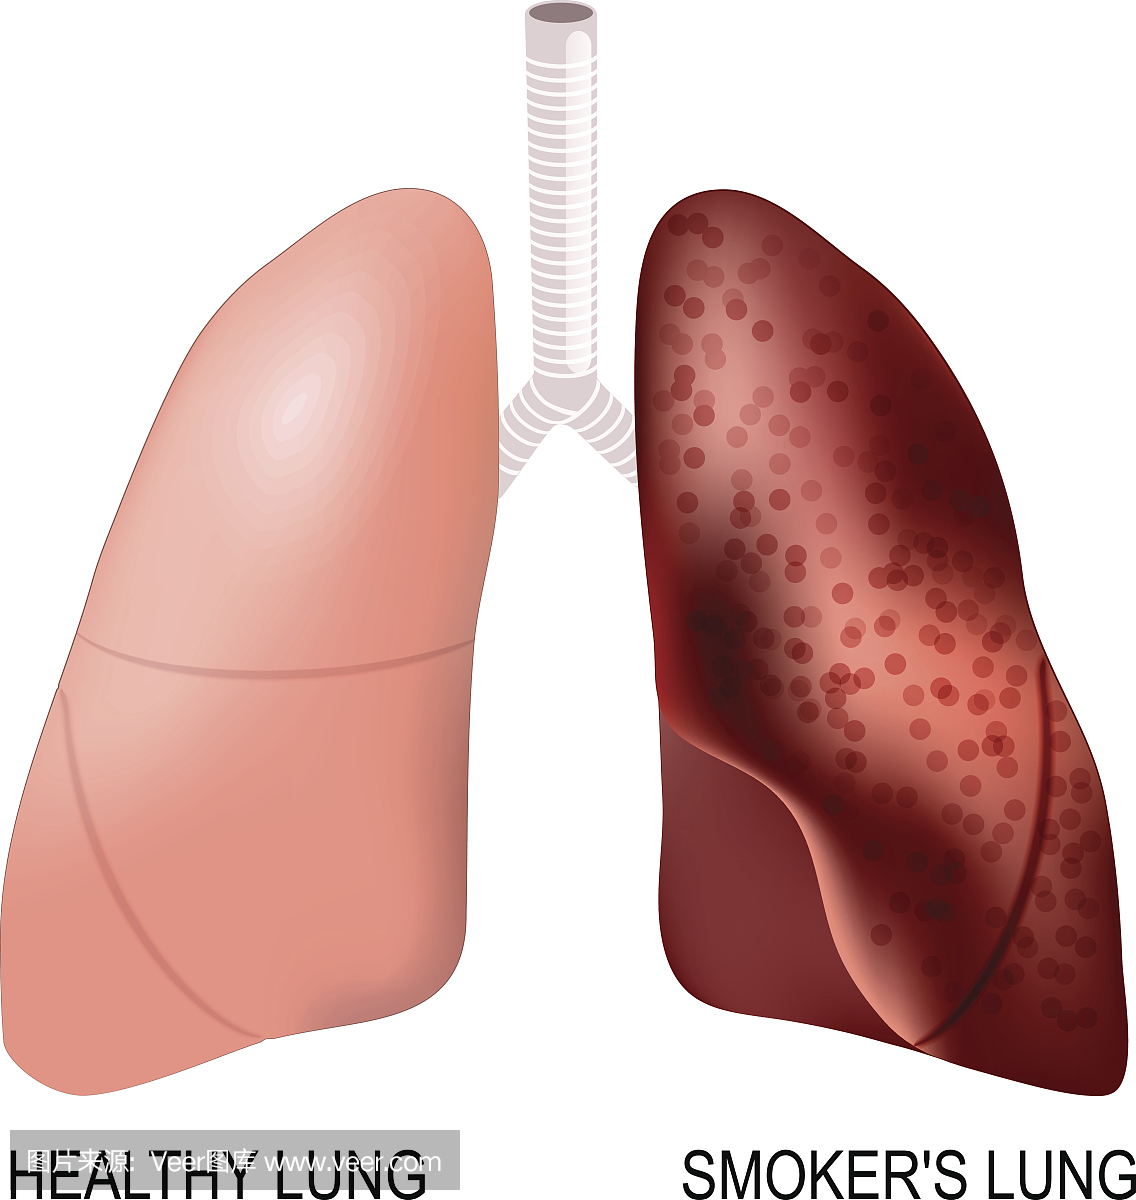 吸烟者的肺和健康的肺